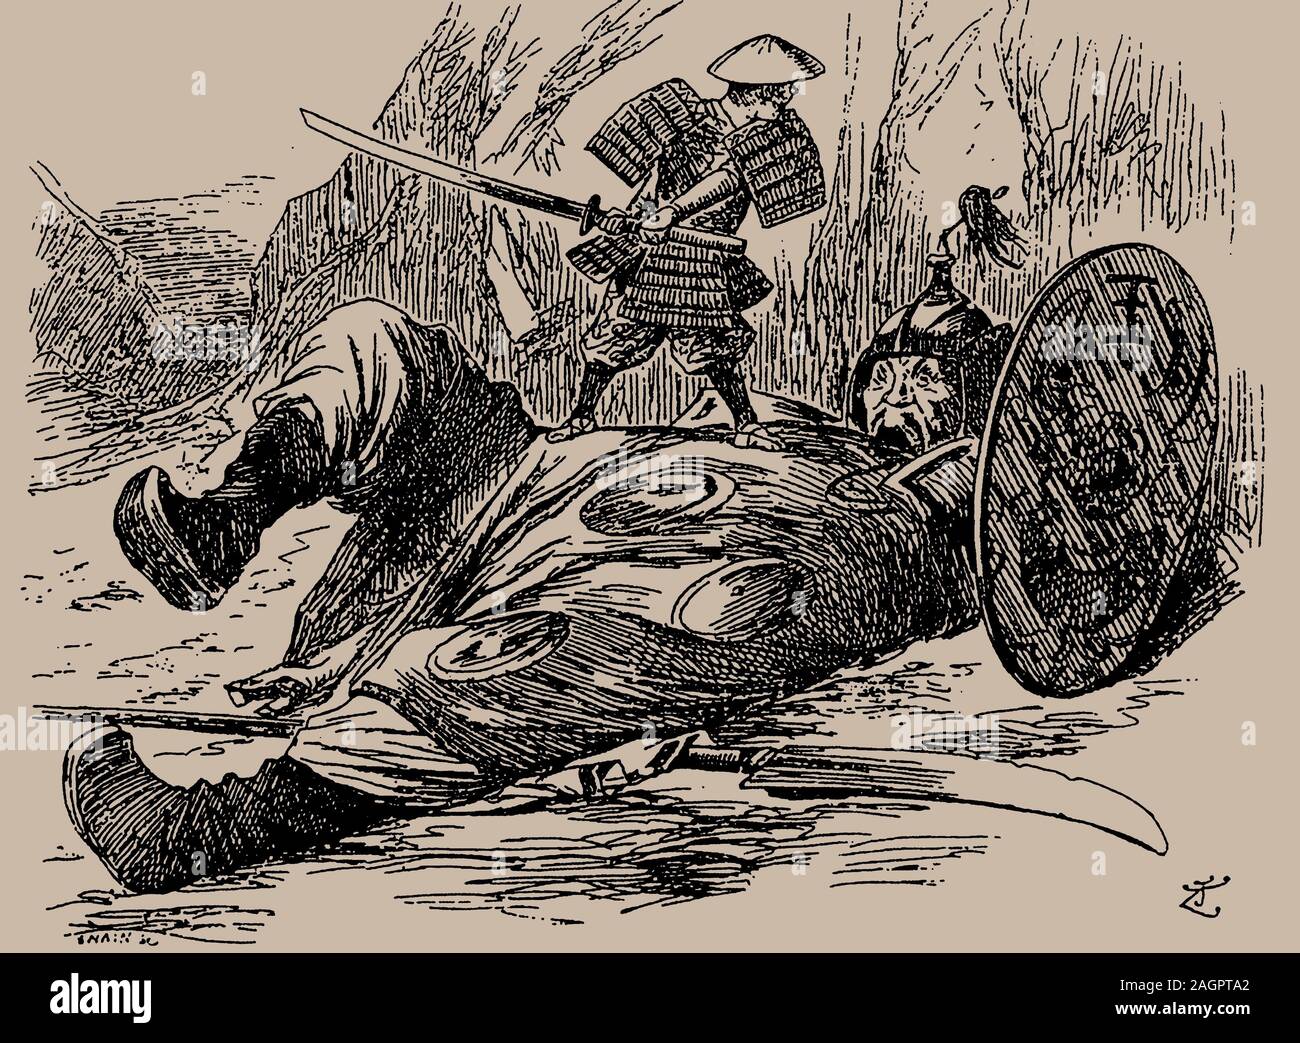 Dessin animé sur la première guerre sino-japonaise. Punch, 29 septembre 1894. Musée : collection privée. Auteur : anonyme. Banque D'Images